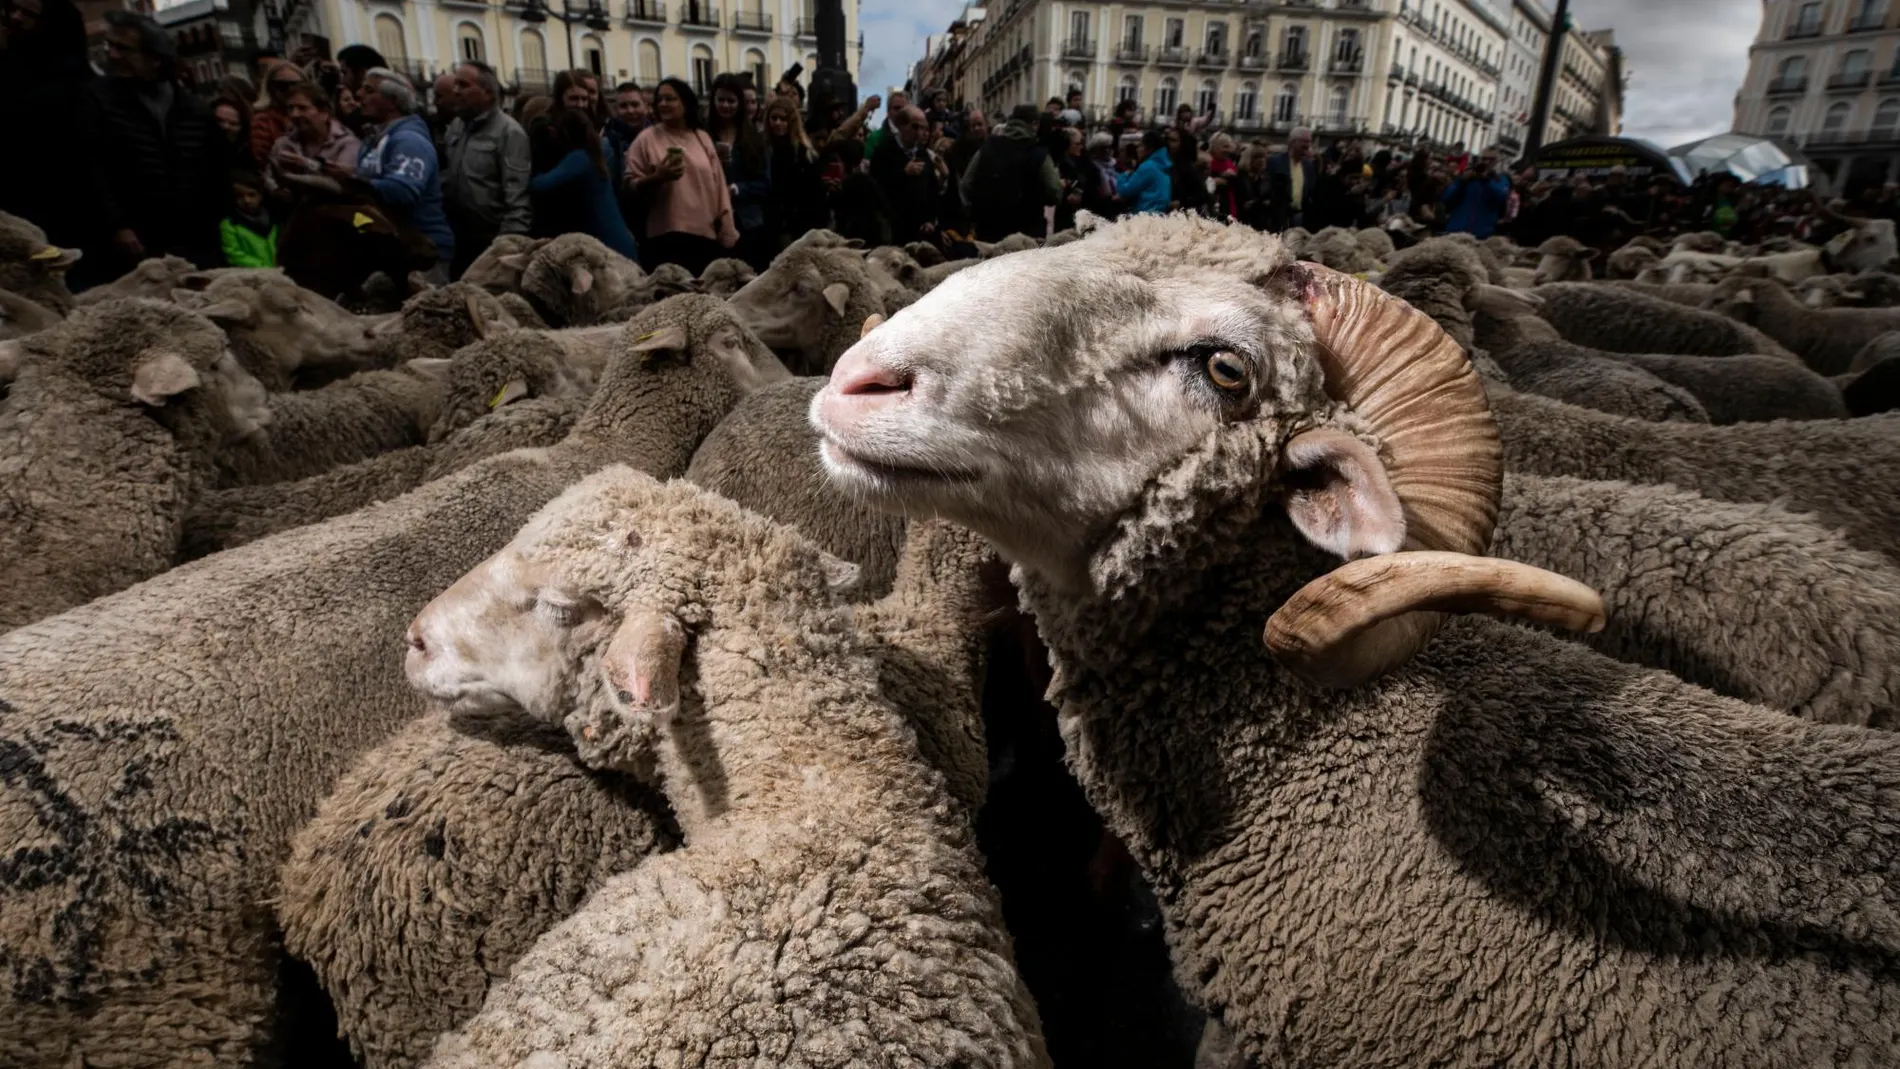 20-10-19. 1.800 orejas y 100 cabras recorren el centro de Madrid. Fiesta de la Transhumancia.